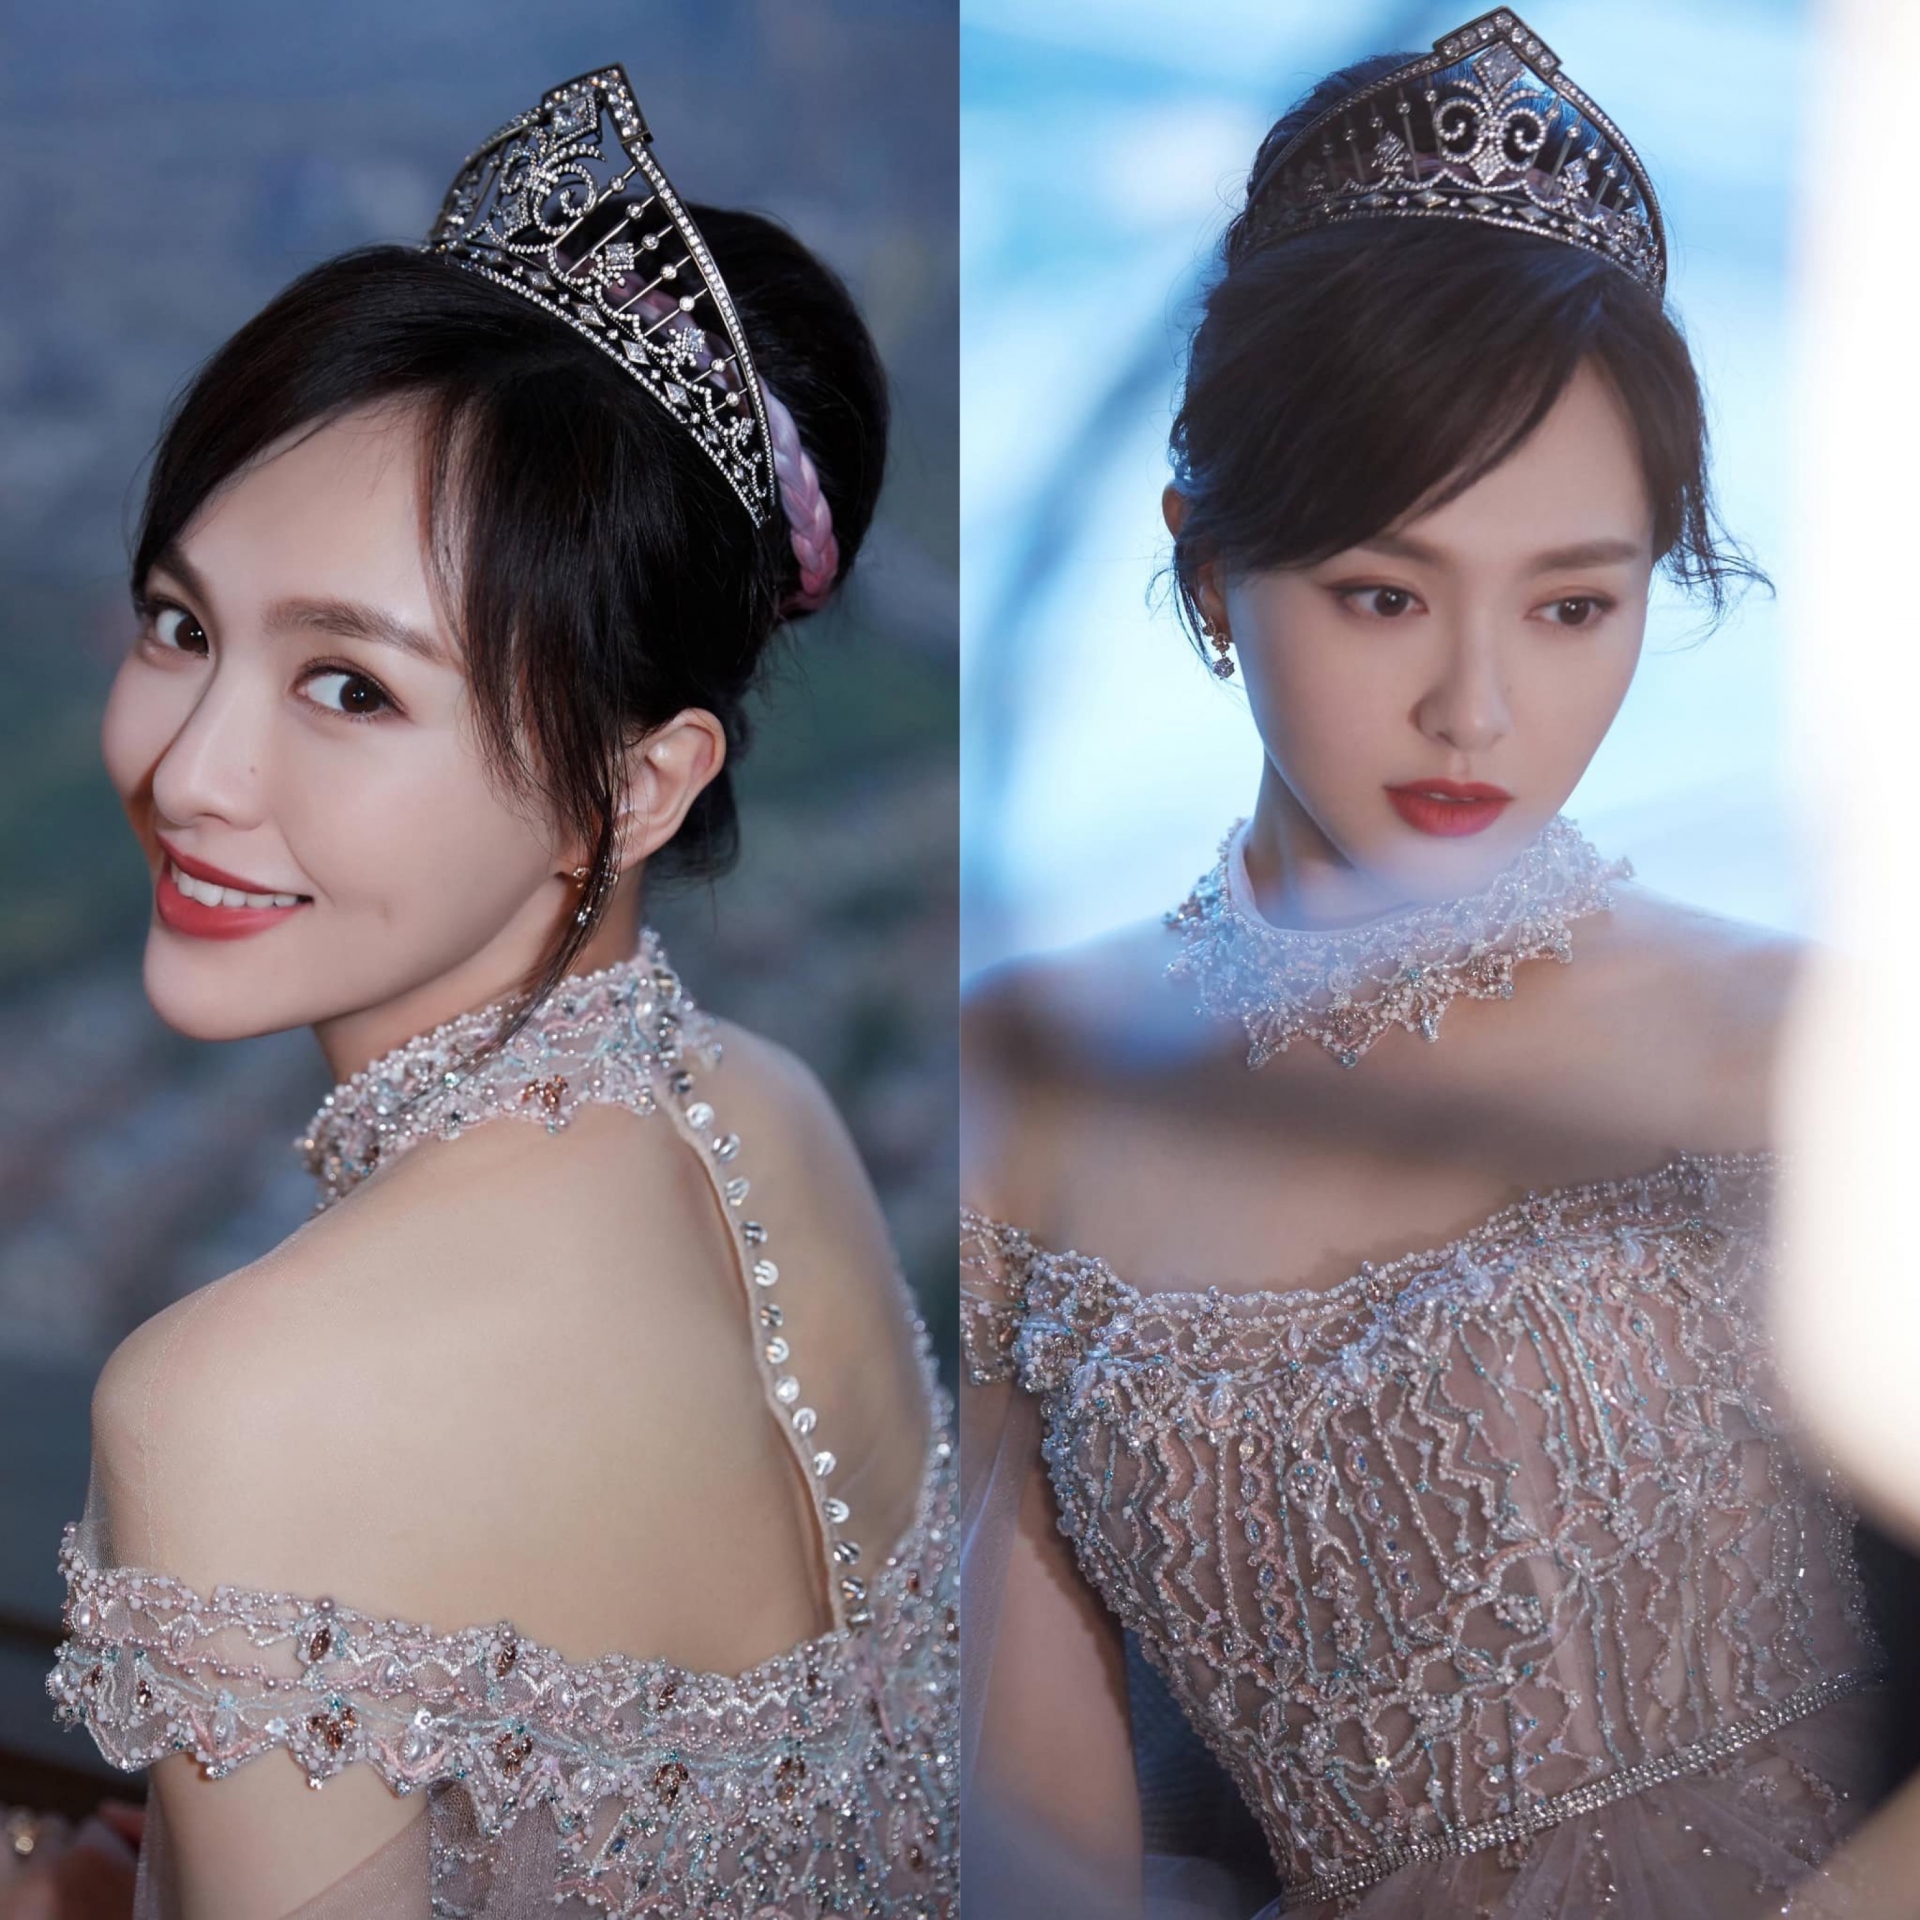 Lựa chọn đeo một chiếc vương miện, Đường Yên bị chê là làm lố và 'cưa sừng làm nghé' ở tuổi 37. Tuy nhiên fan của nữ diễn viên thì cho rằng nhan sắc xinh đẹp của cô hoàn toàn phù hợp với style công chúa này.